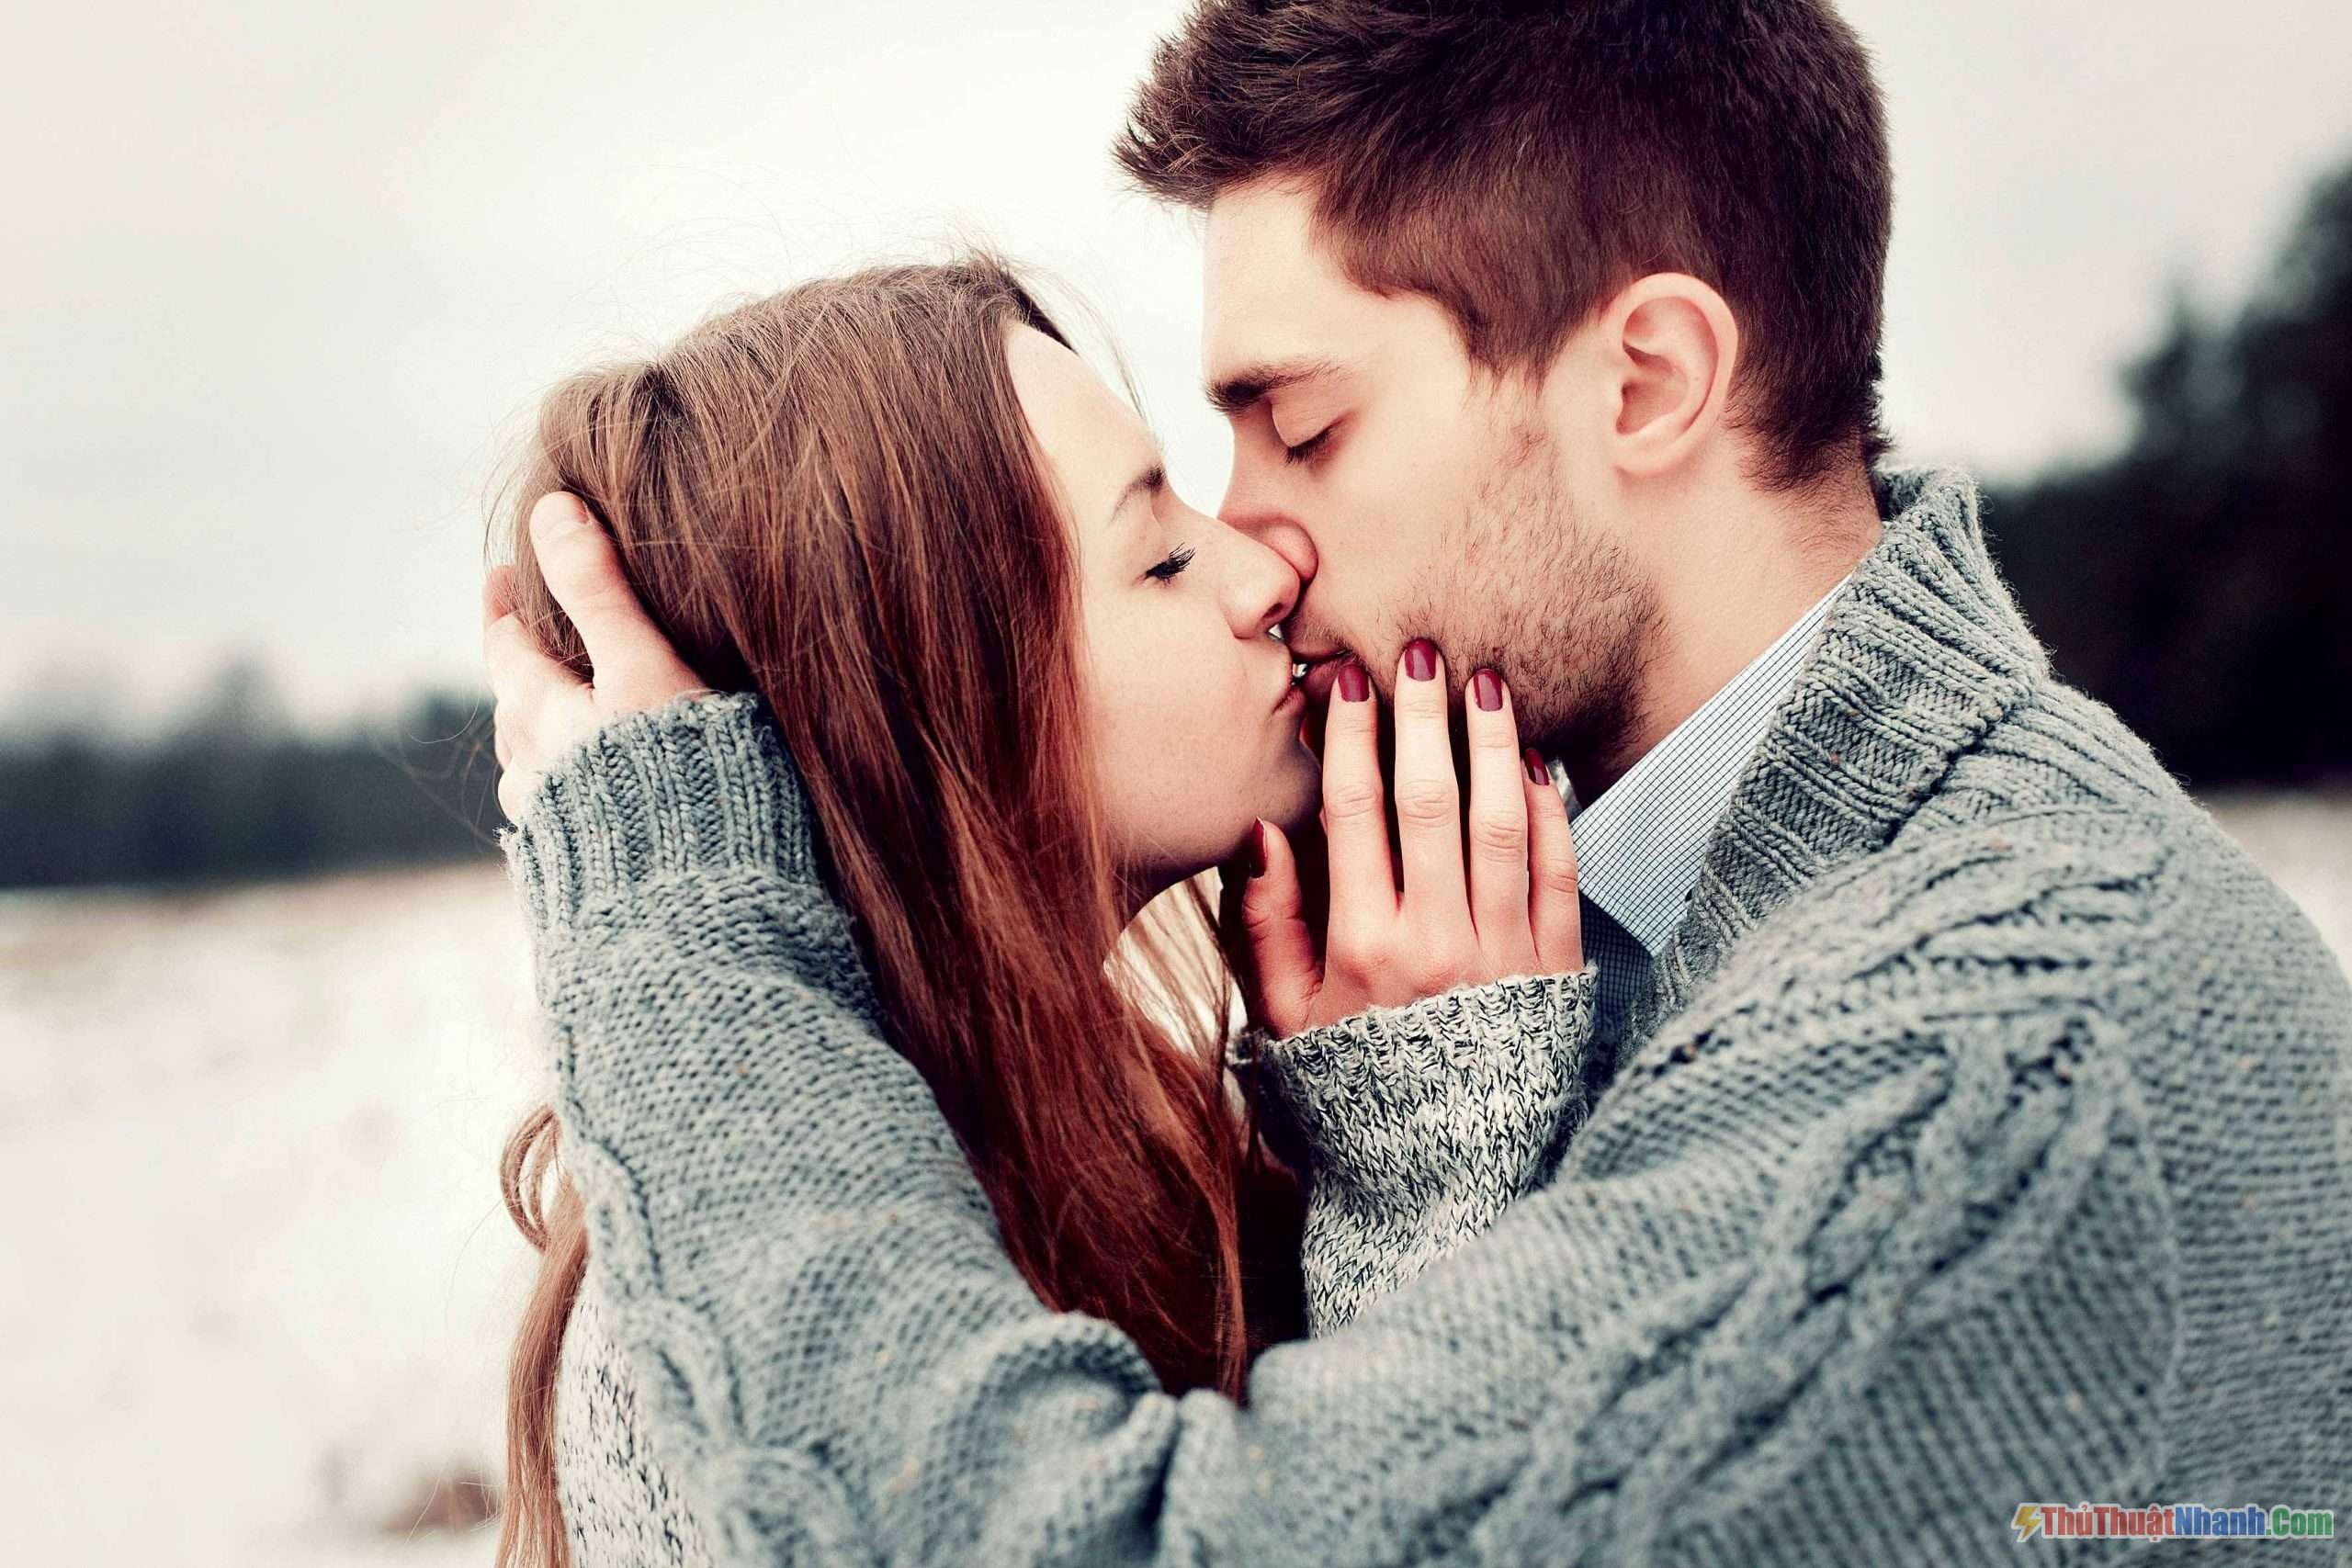 Hôn môi lãng mạn là một phần không thể thiếu trong tình yêu. Xem hình ảnh để tìm hiểu thêm về những cách hôn môi tình cảm và lãng mạn nhất, để có thể làm người yêu của bạn cảm thấy hạnh phúc và yêu thương.